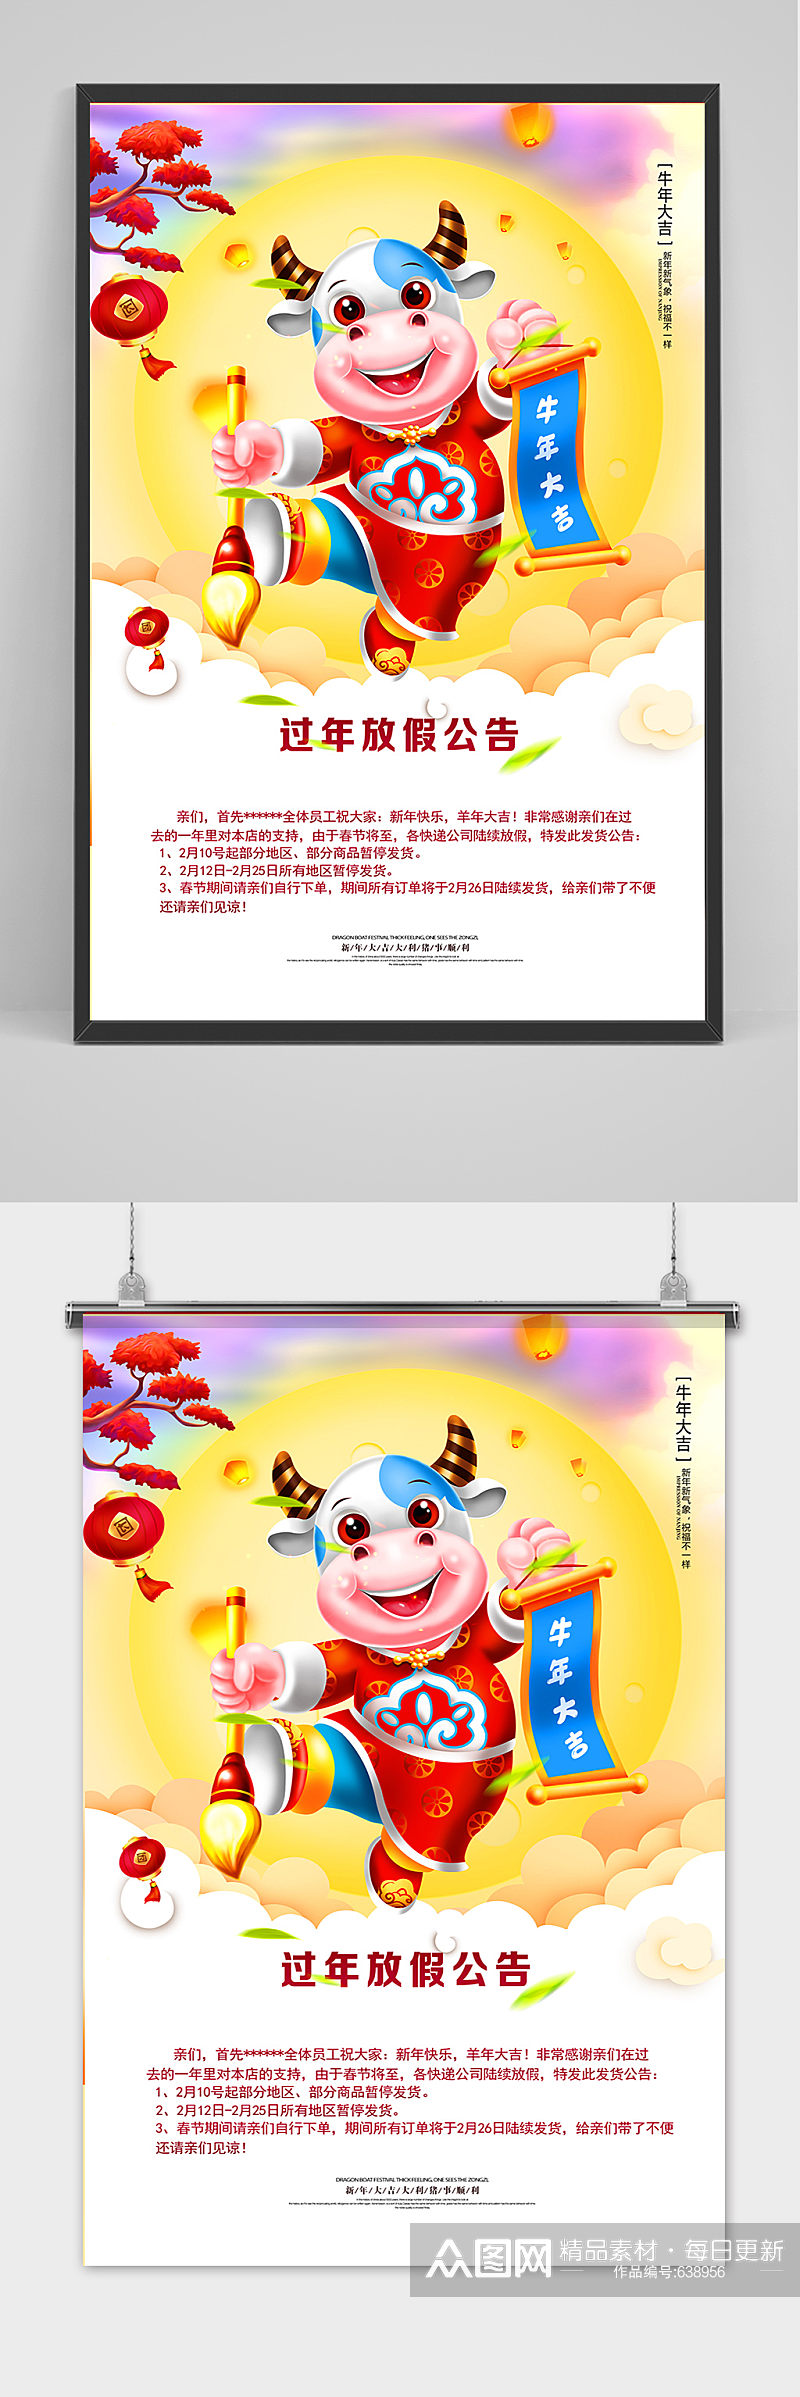 2021年牛年新年春节放假通知公告海报素材